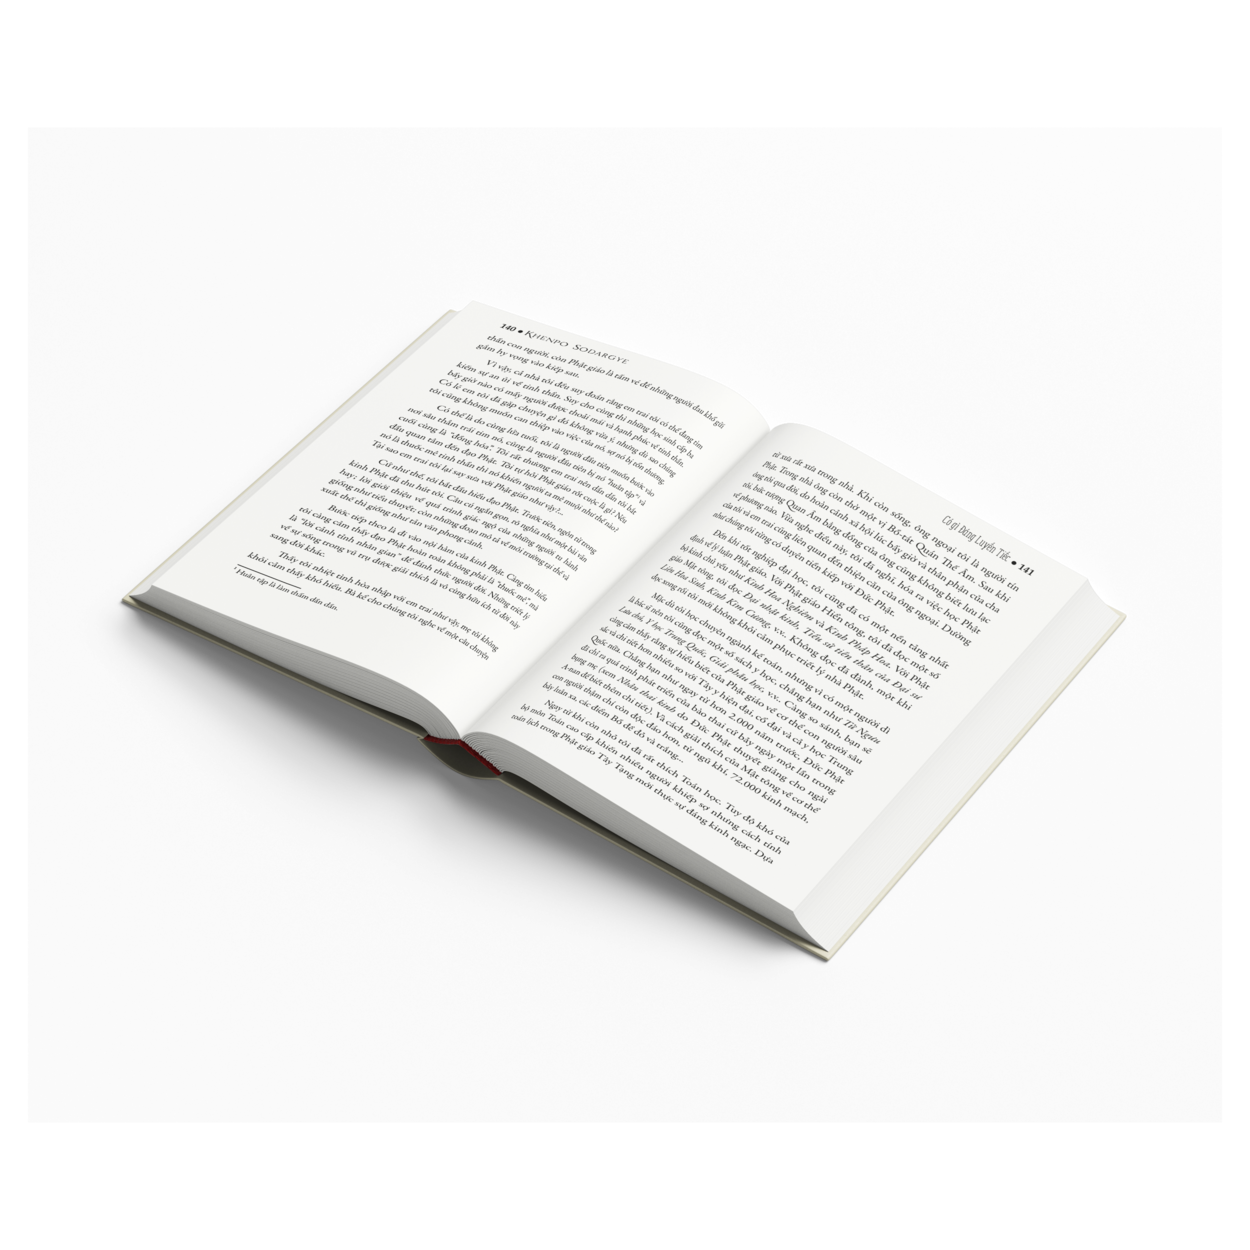 BỘ SÁCH "TIẾC" ( Có Gì Đáng Luyến Tiếc Và May Mắn Có những Phiền Não) - Sách Tôn Giáo, Nghệ Thuật Và Văn Hóa, Tác Giả KHENPO SODARGYE - Hiệu Sách GenBooks, bìa mềm, in màu